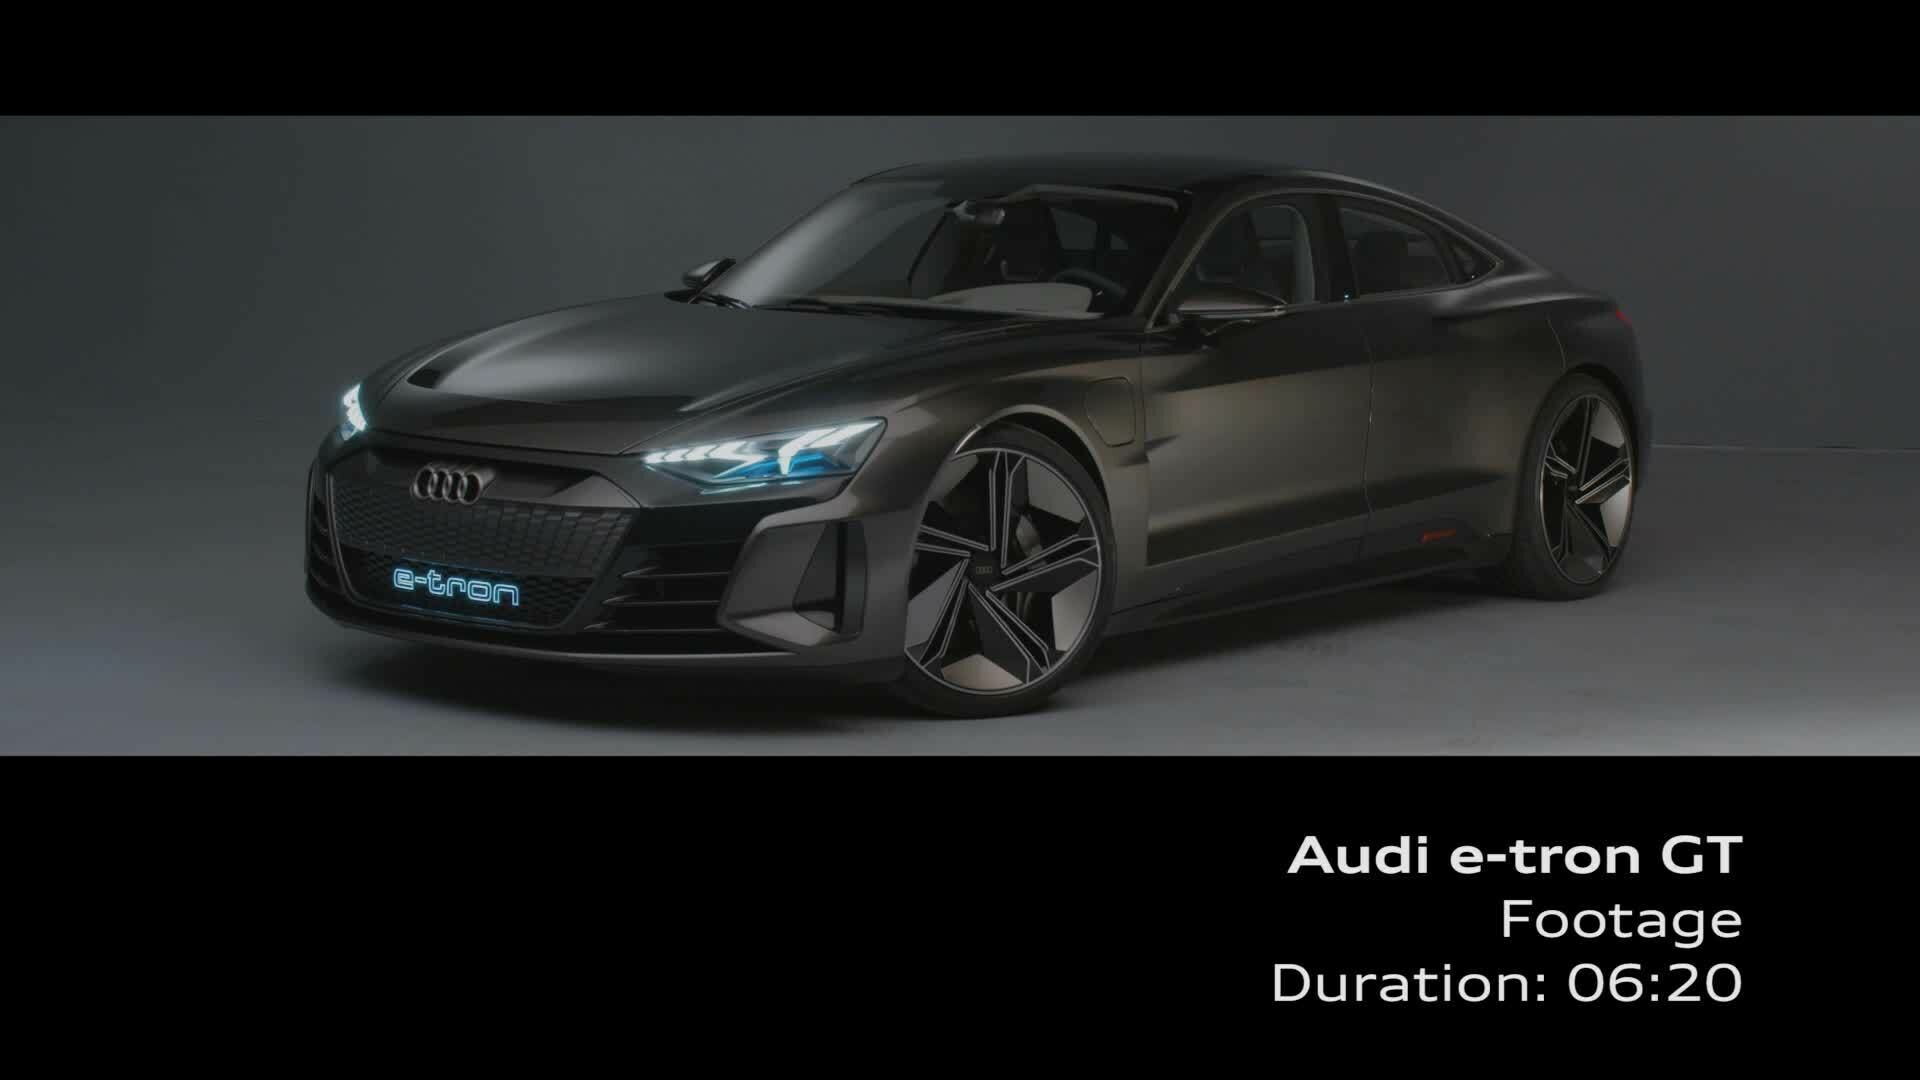 Audi e-tron GT concept (Footage)